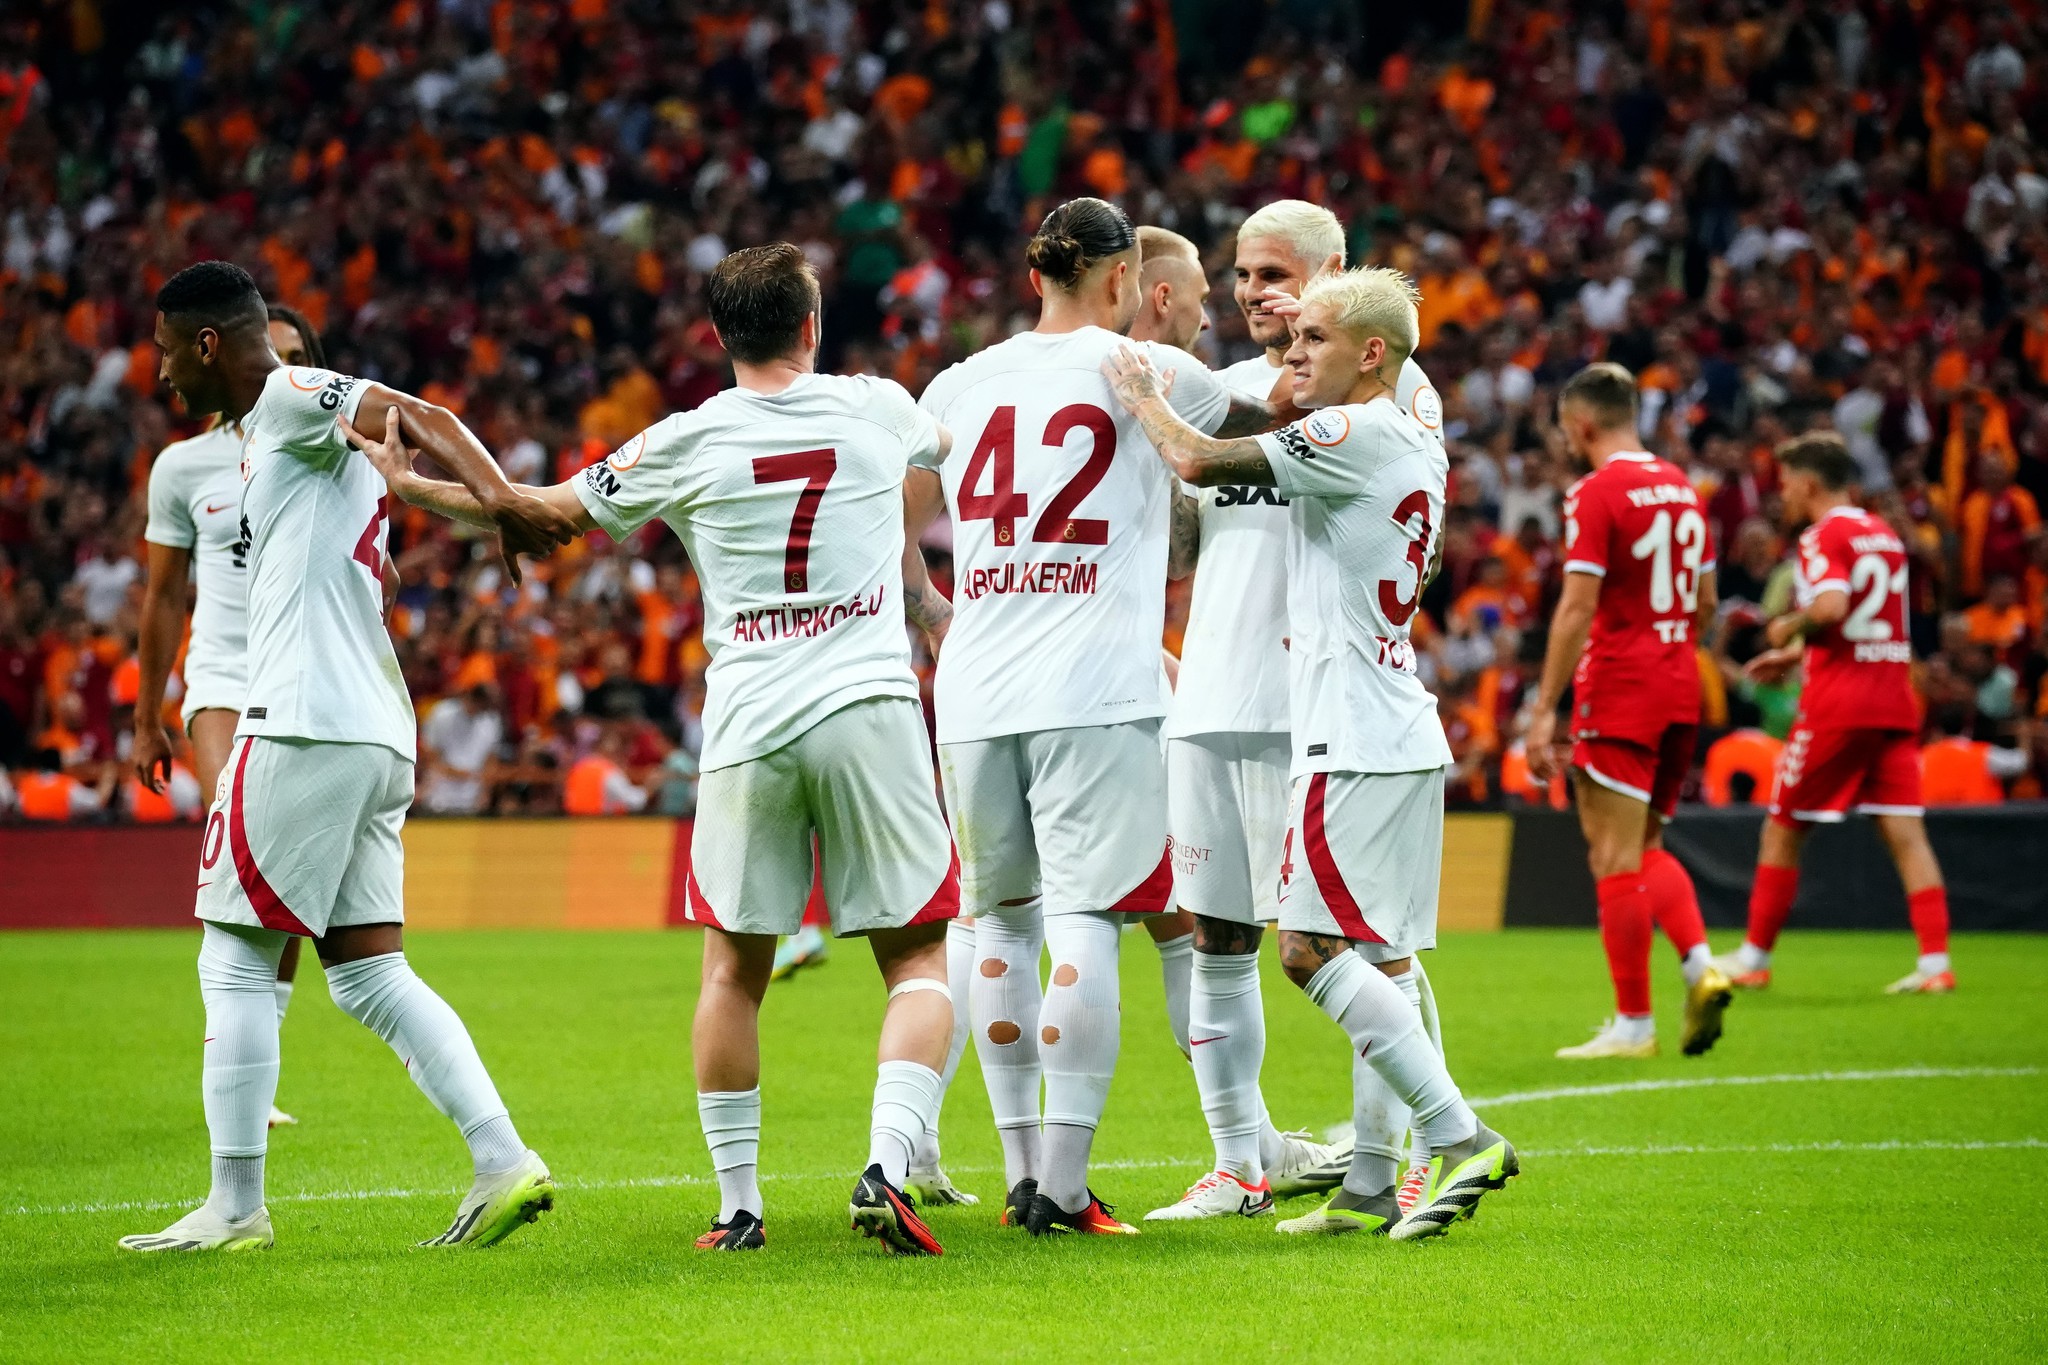 Transferde Galatasaray - Fenerbahçe derbisi! Böyle kapışma görülmedi